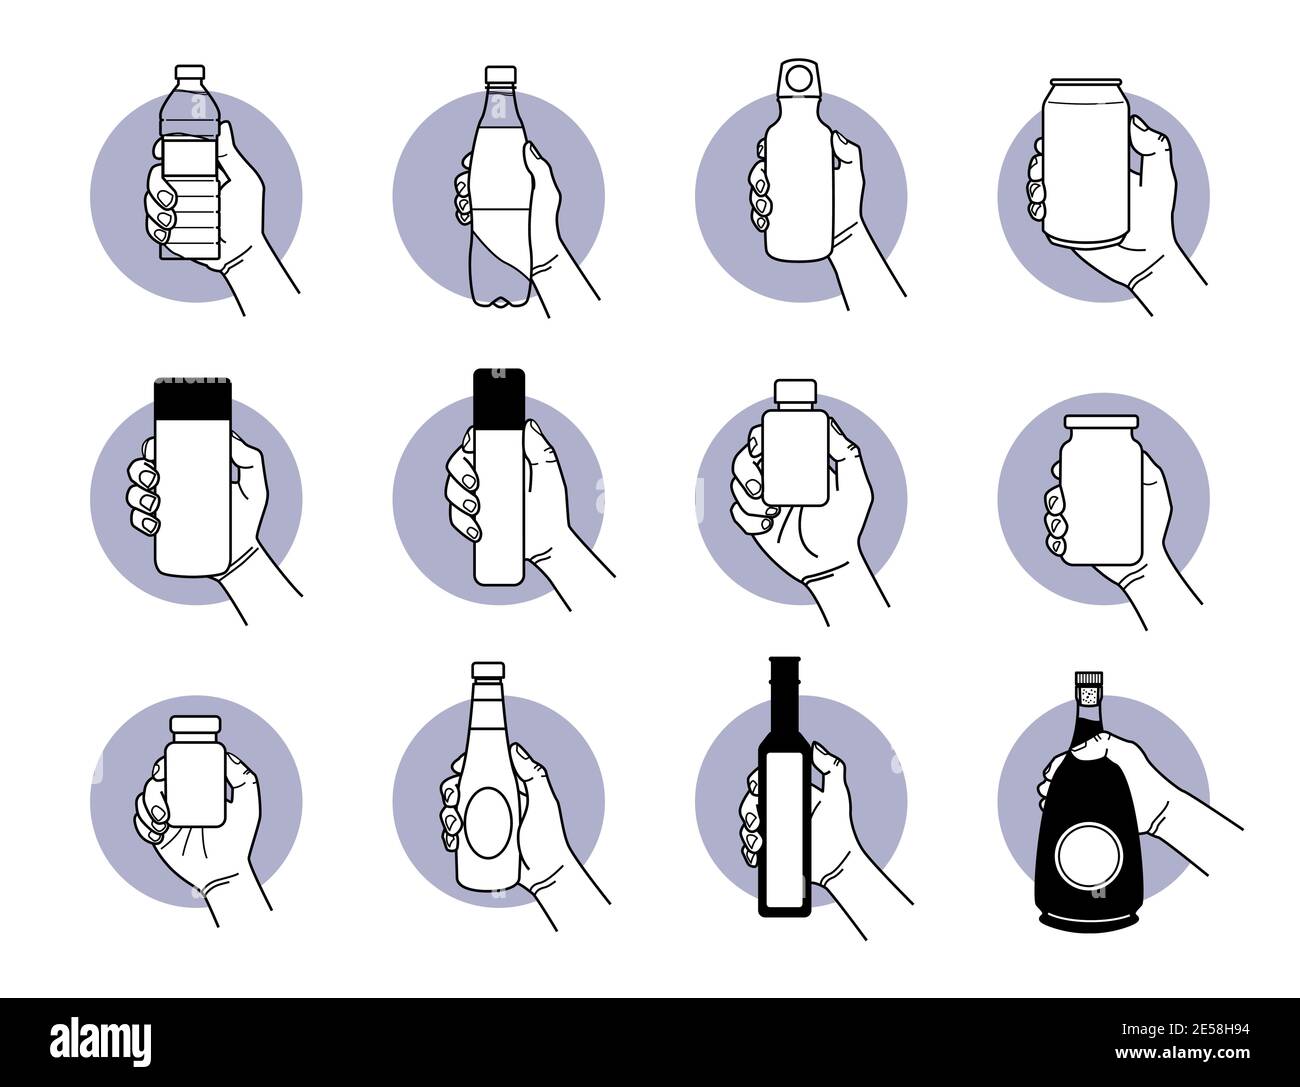 Porta a mano diversi tipi di bottiglie per bevande e bevande. Illustrazione vettoriale del flacone di plastica, del pallone di alluminio, della lattina, del pisello Illustrazione Vettoriale